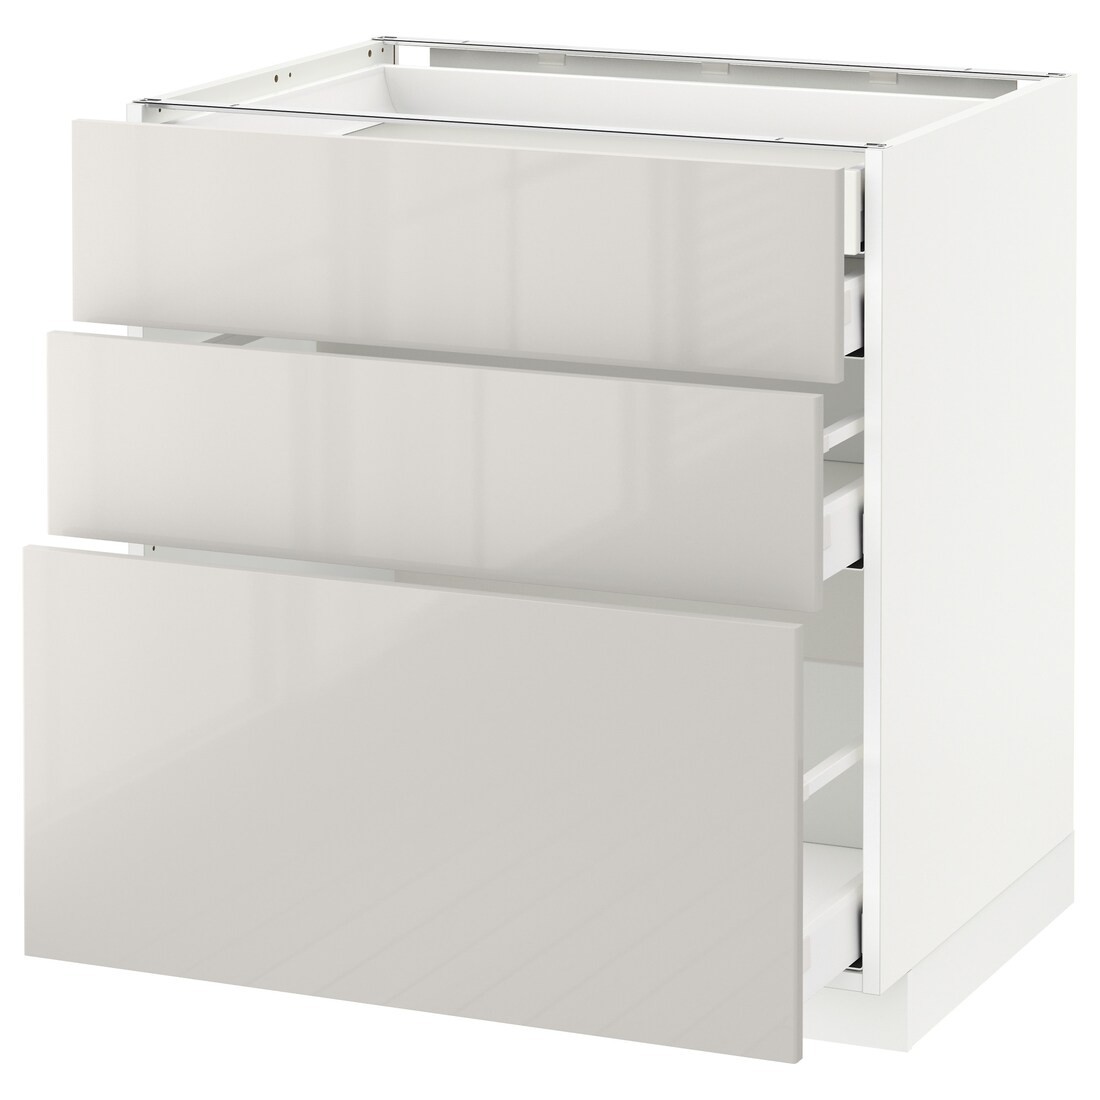 IKEA METOD МЕТОД / MAXIMERA МАКСИМЕРА Напольный шкаф с ящиками, белый / Ringhult светло-серый, 80x60 см 59141734 591.417.34